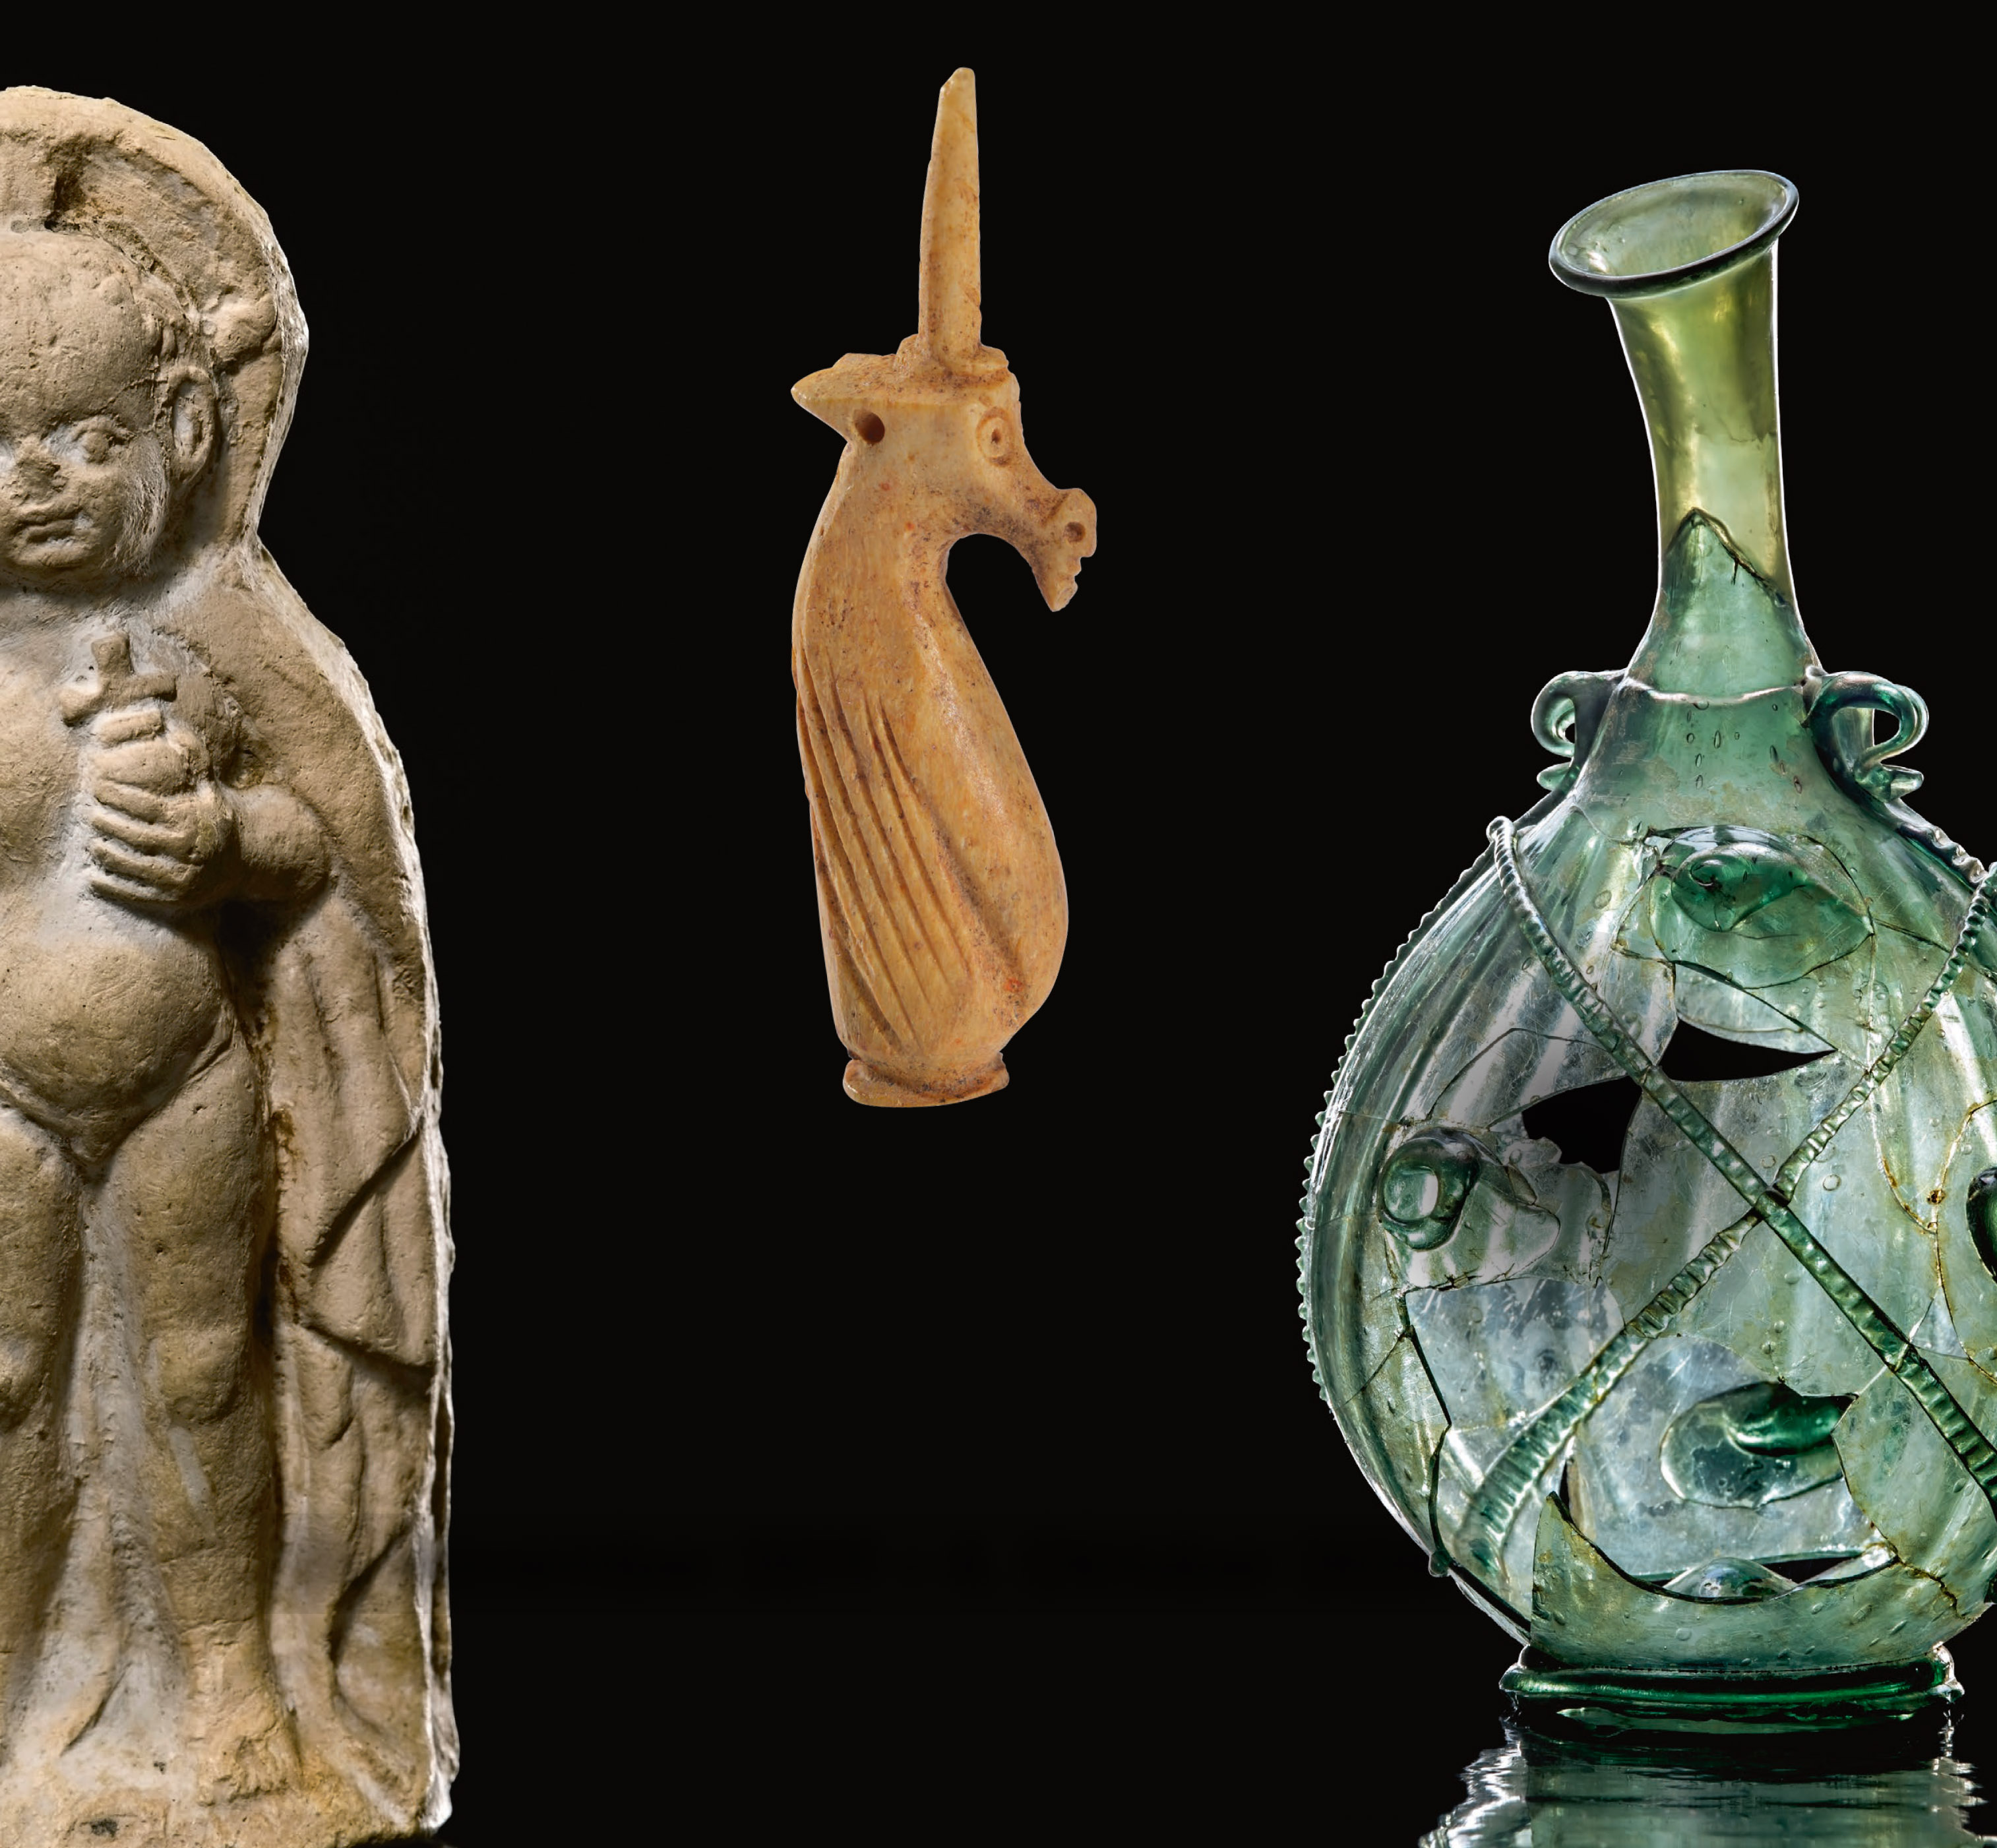 3 archäologische Objekte auf schwarzem Hintergrund: ein Jesusknabe, ein Einhorn und eine gläserne Vase.